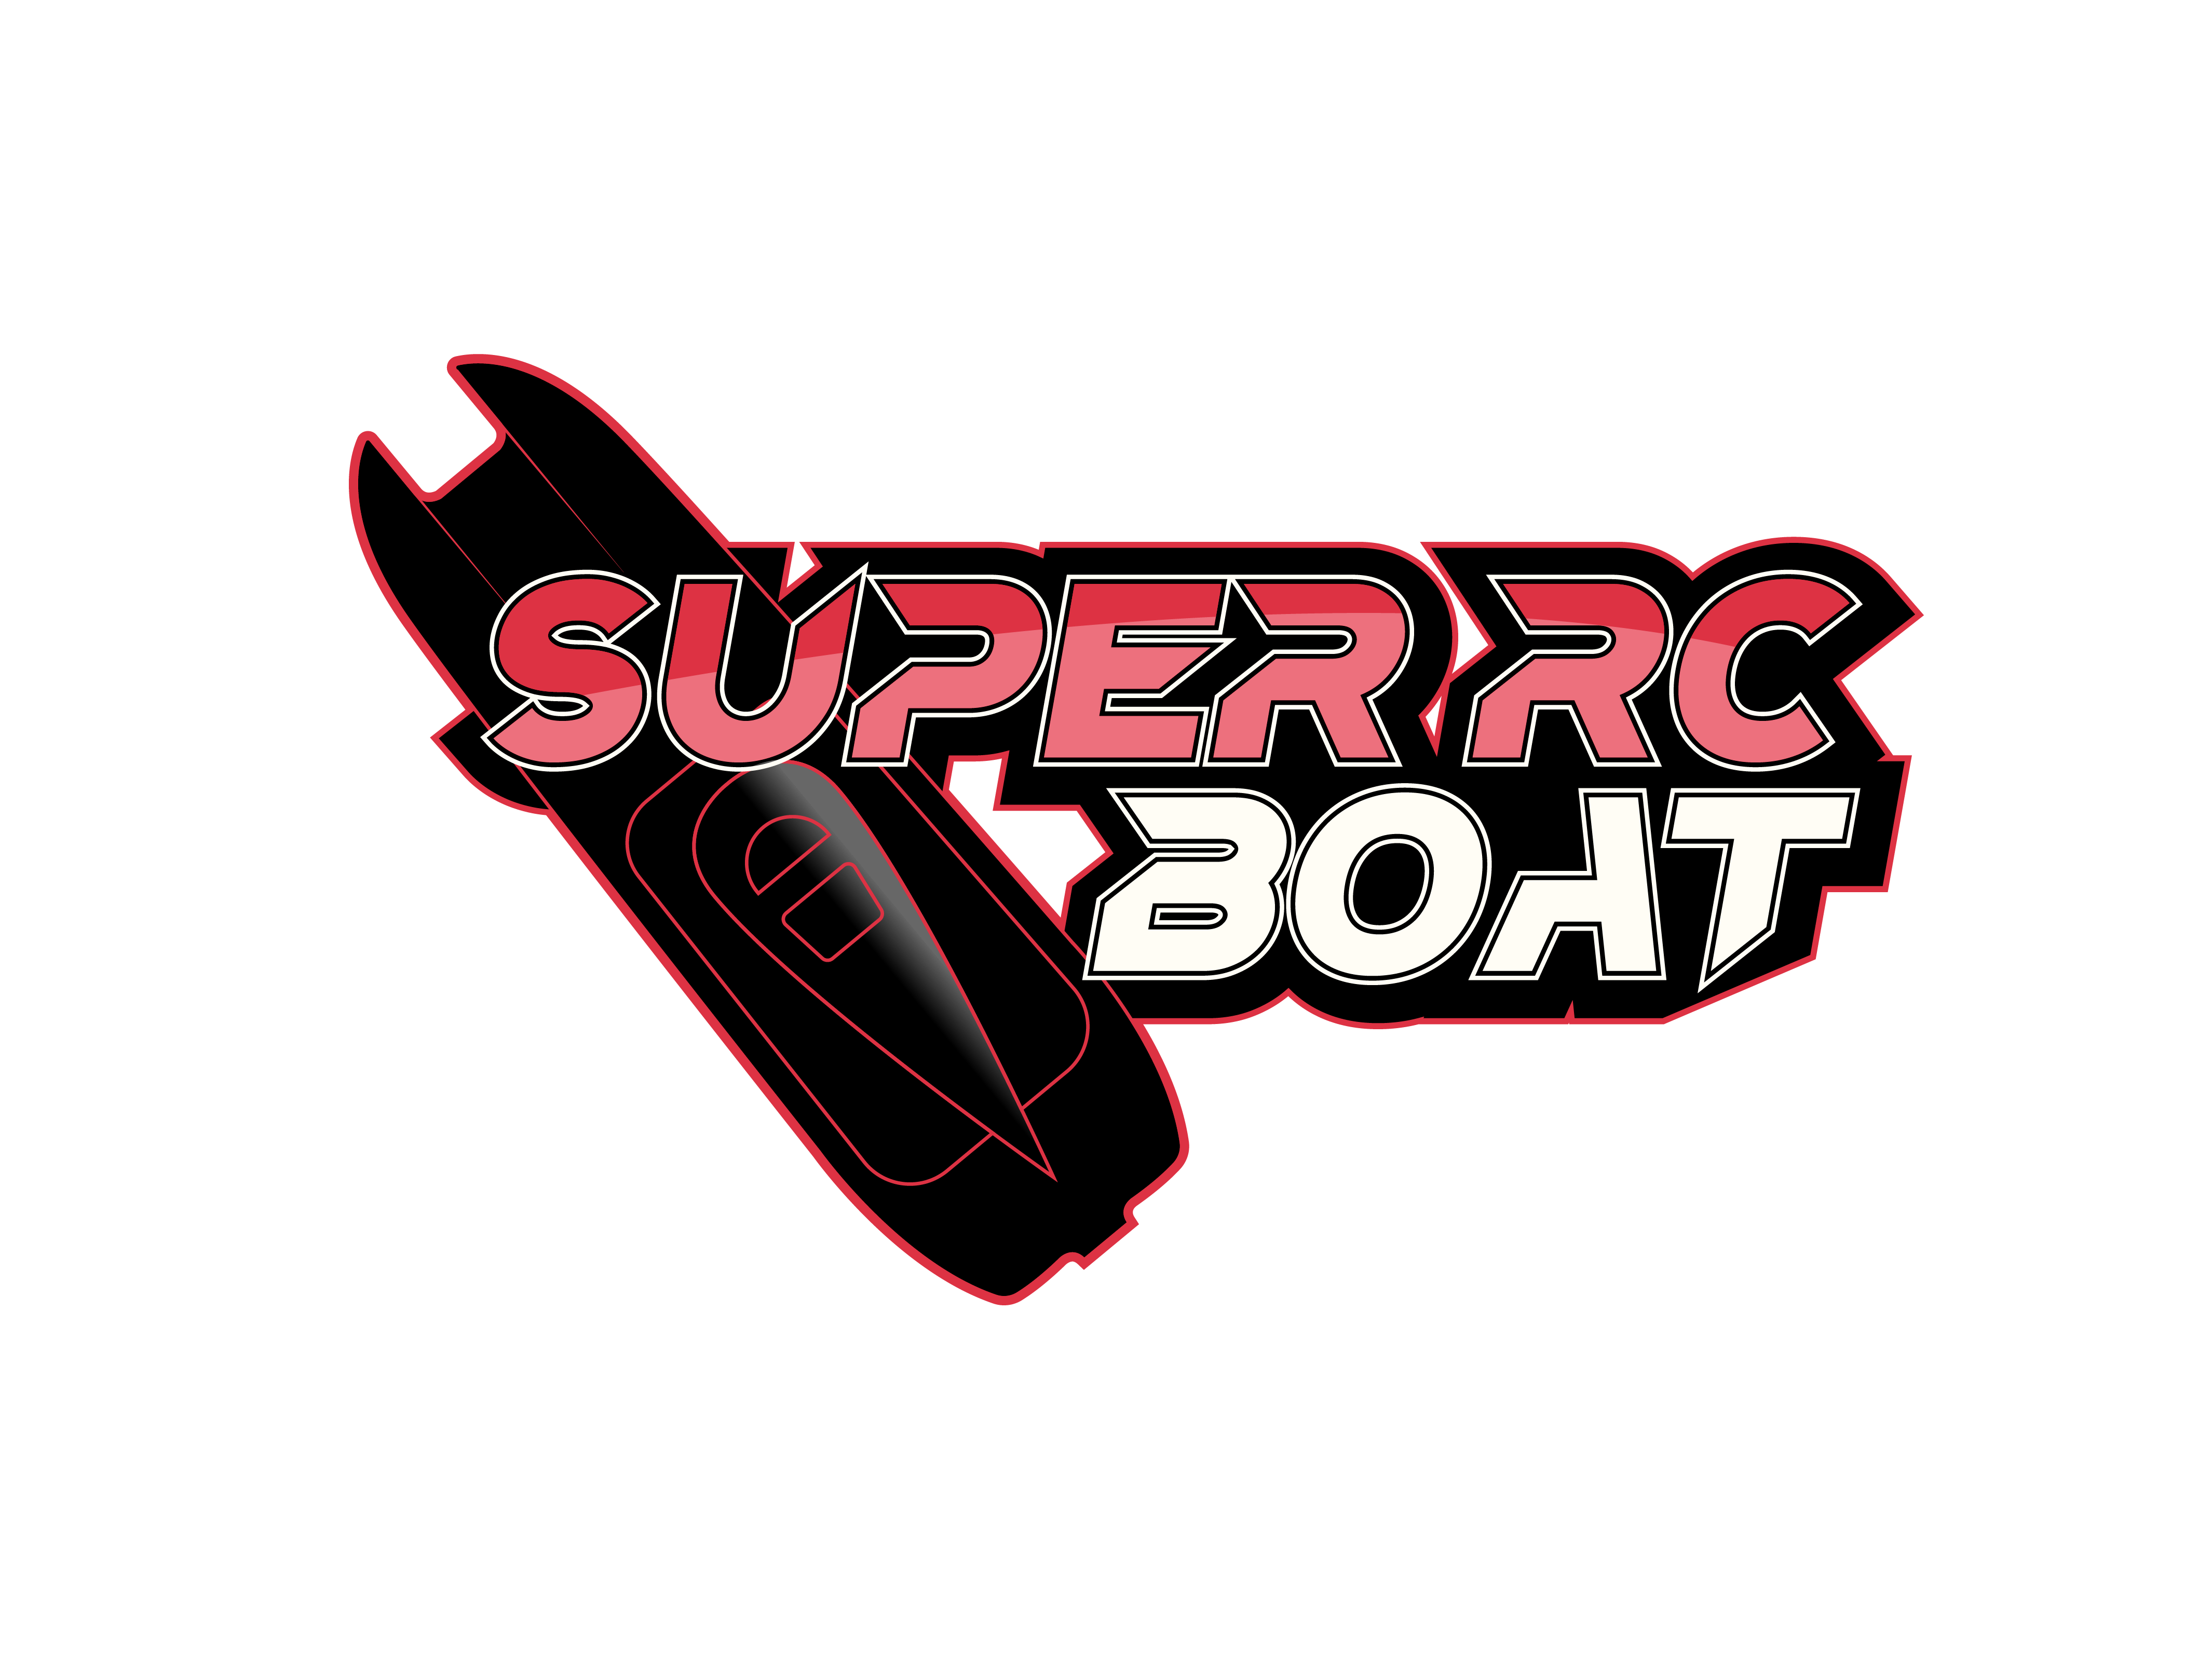 super-rc-boat